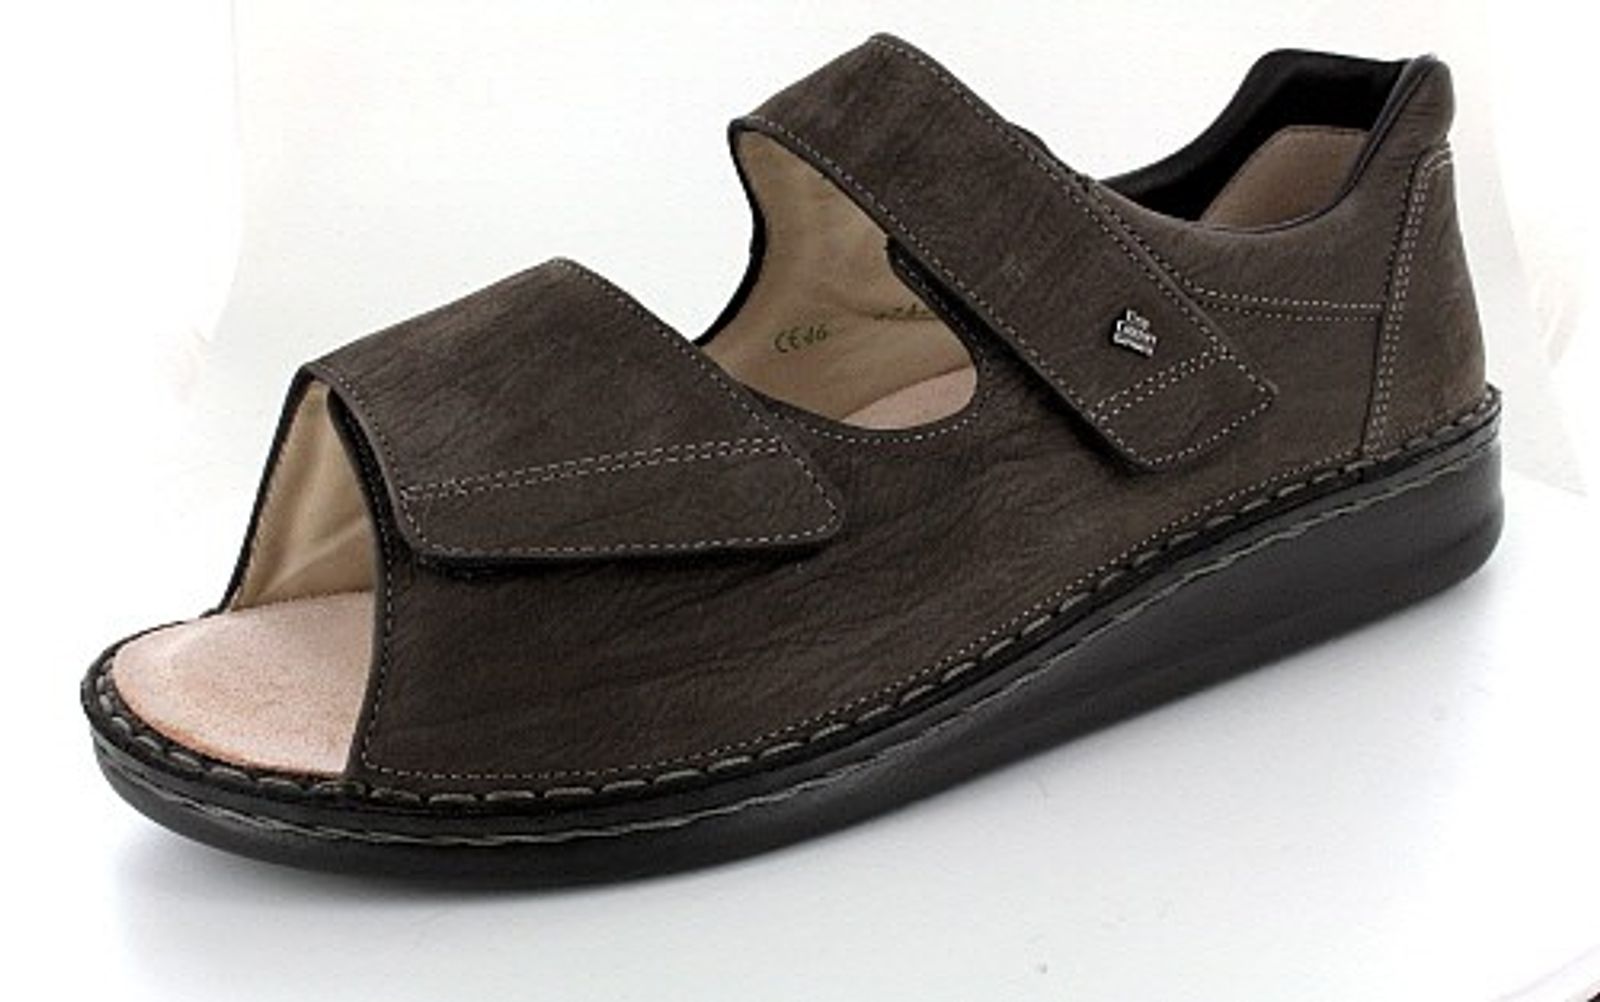 Schuh von Finn Comfort, 44